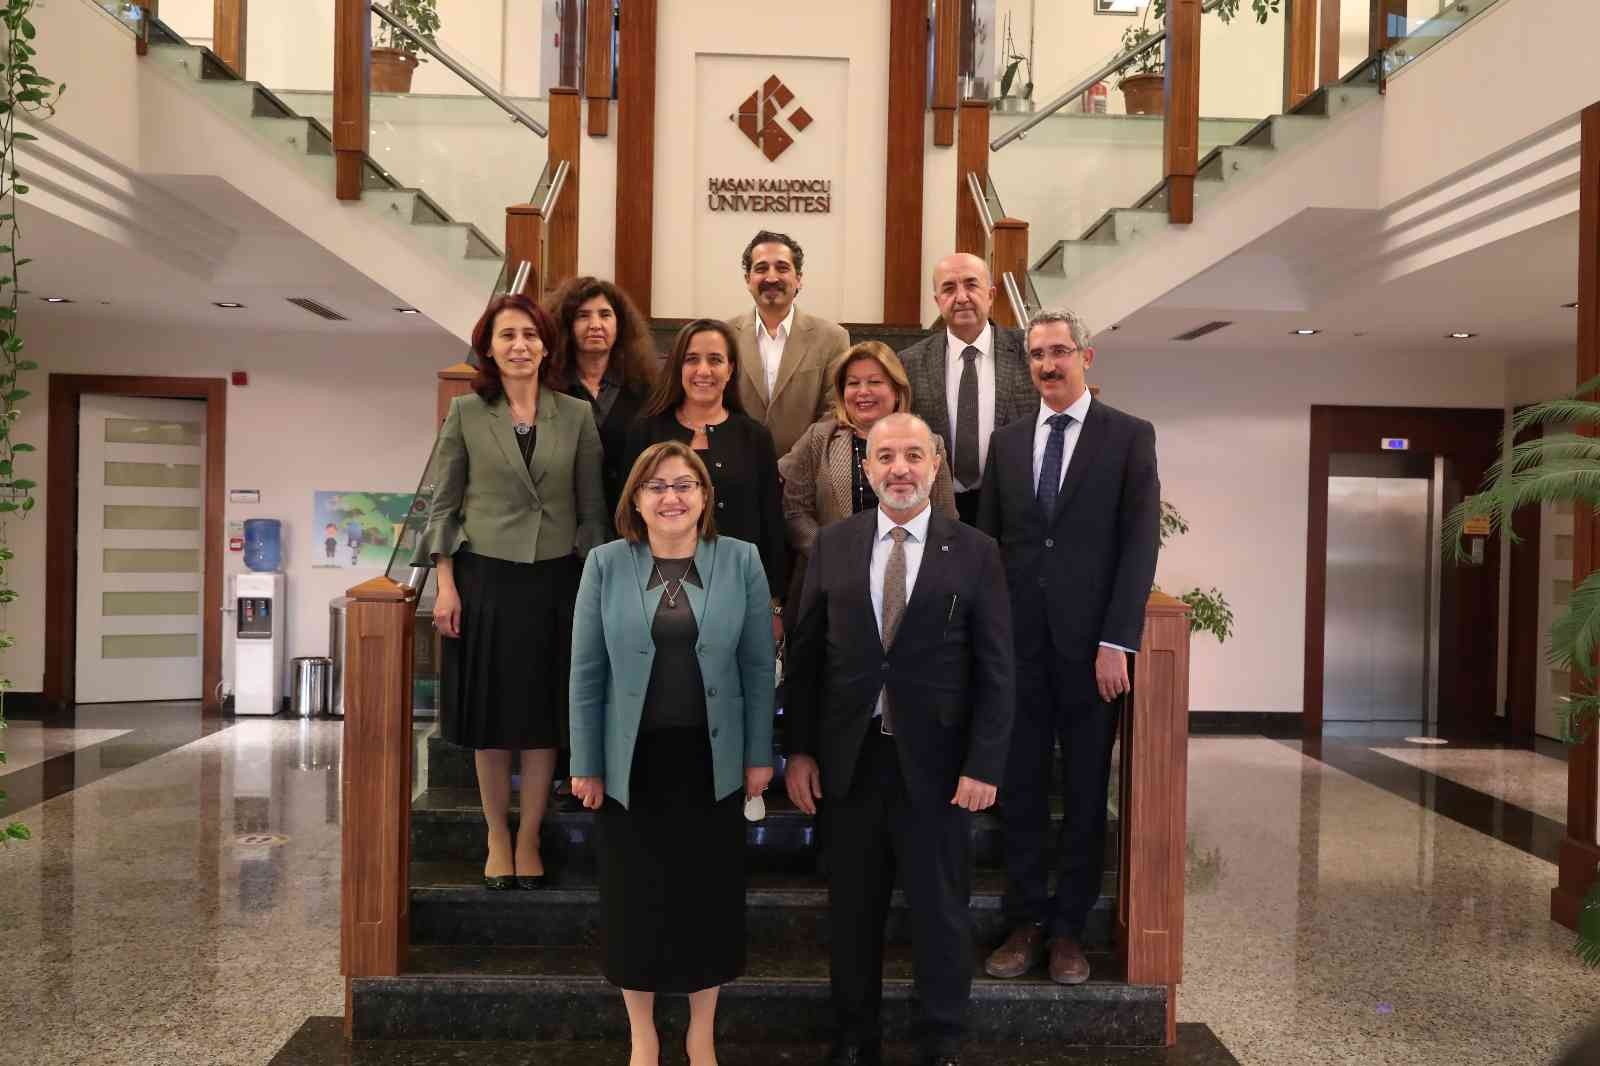 Hasan Kalyoncu Üniversitesi ve Gaziantep Büyükşehir Belediyesi arasında iş birliği protokolü